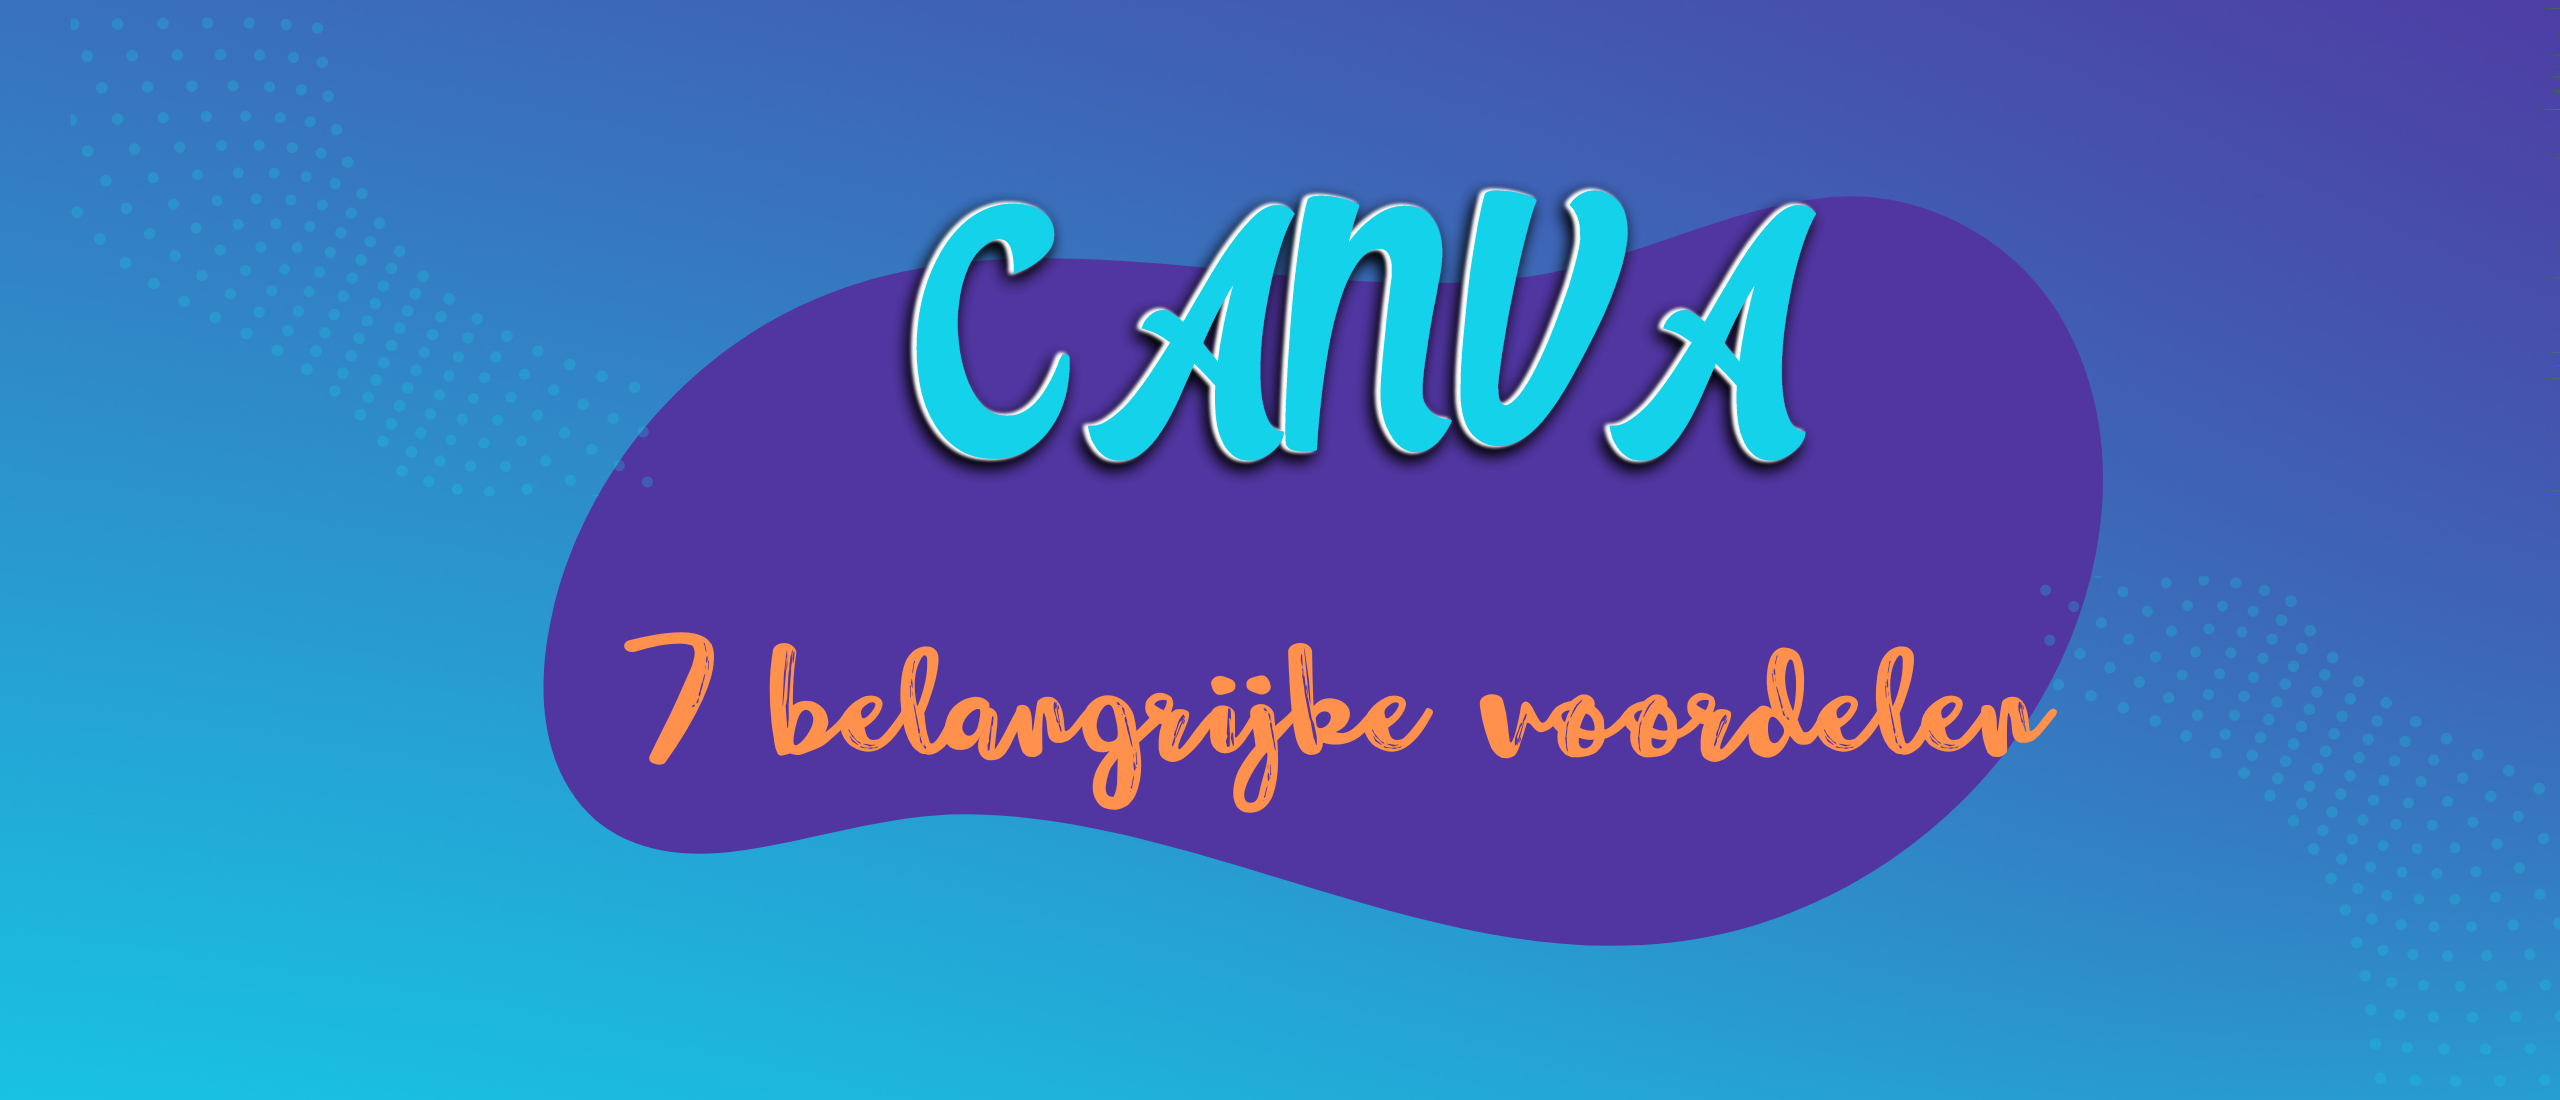 7 belangrijke voordelen van Canva